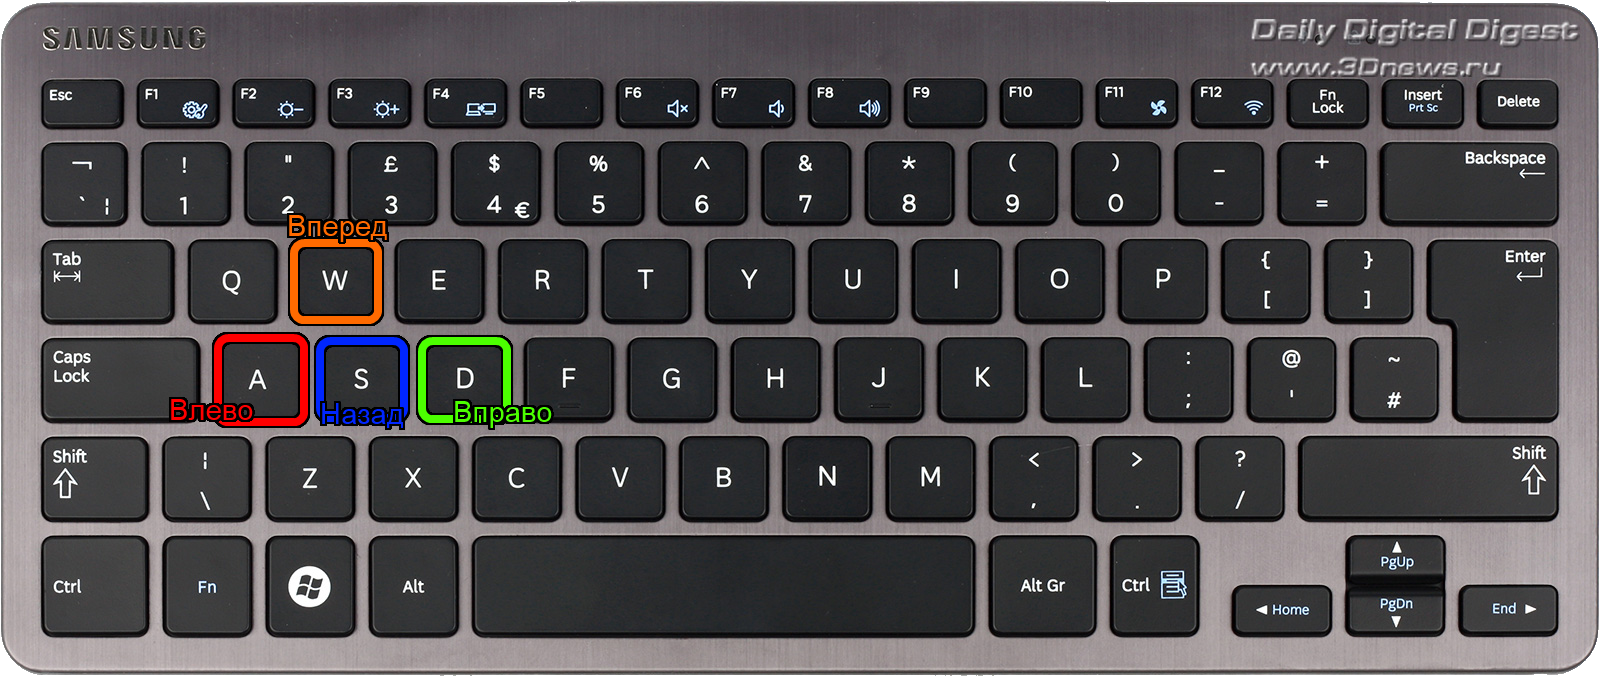 Фризы на ноутбуке. Скрин на клавиатуре. Скрин на клавиатуре ноутбука. Полный экран на клавиатуре. Insert на клавиатуре компьютера.